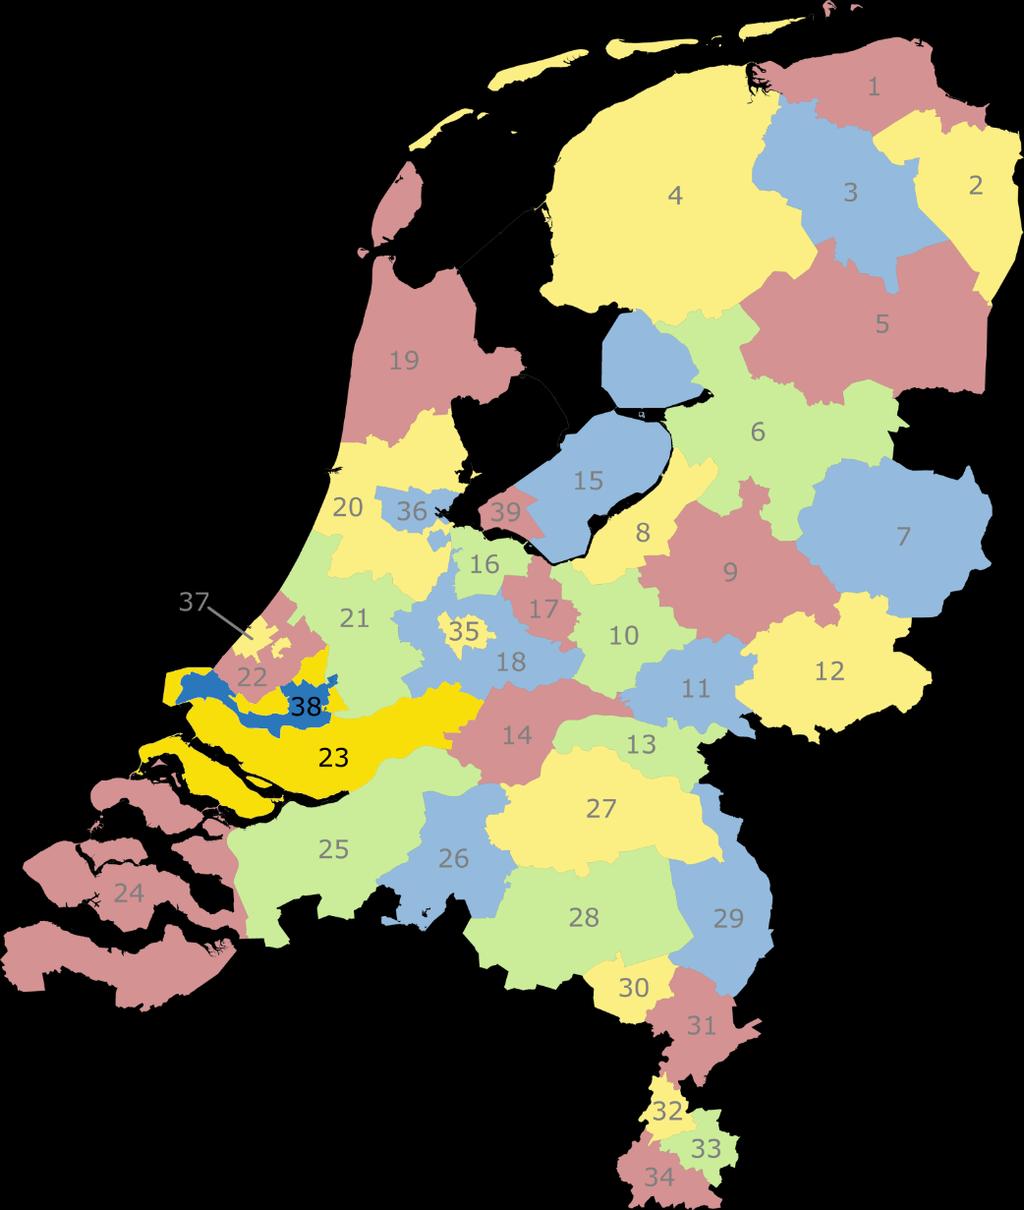 A RPA-indeling nr RPA 1 Noord-Groningen 2 Oost-Groningen 3 Centraal-Groningen 4 Friesland 5 Zuid- en Midden-Drenthe 6 IJssel en Vecht 7 Twente 8 Noordwest-Veluwe 9 Stedendriehoek 10 De Vallei 11